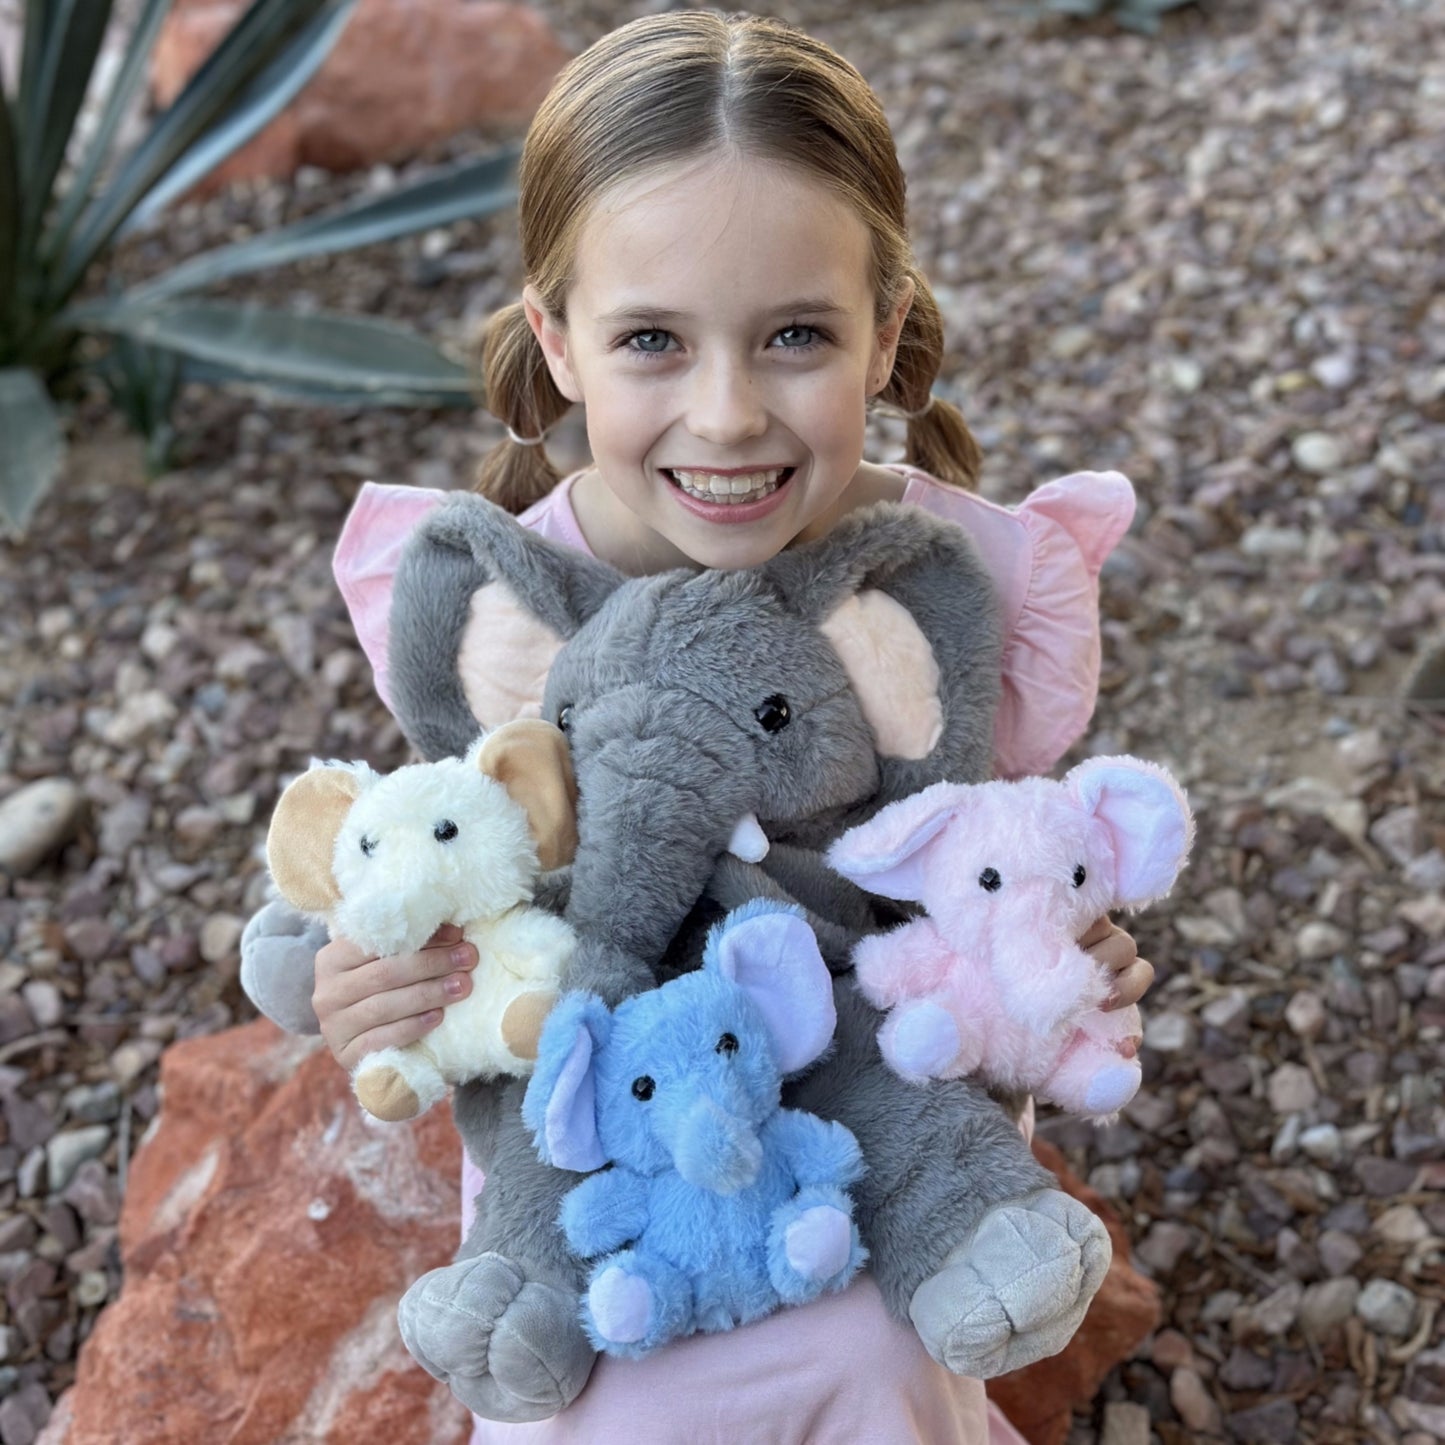 Elephant Plush Toy Set, Grey, 20 Inches - MorisMos Stuffed Animals